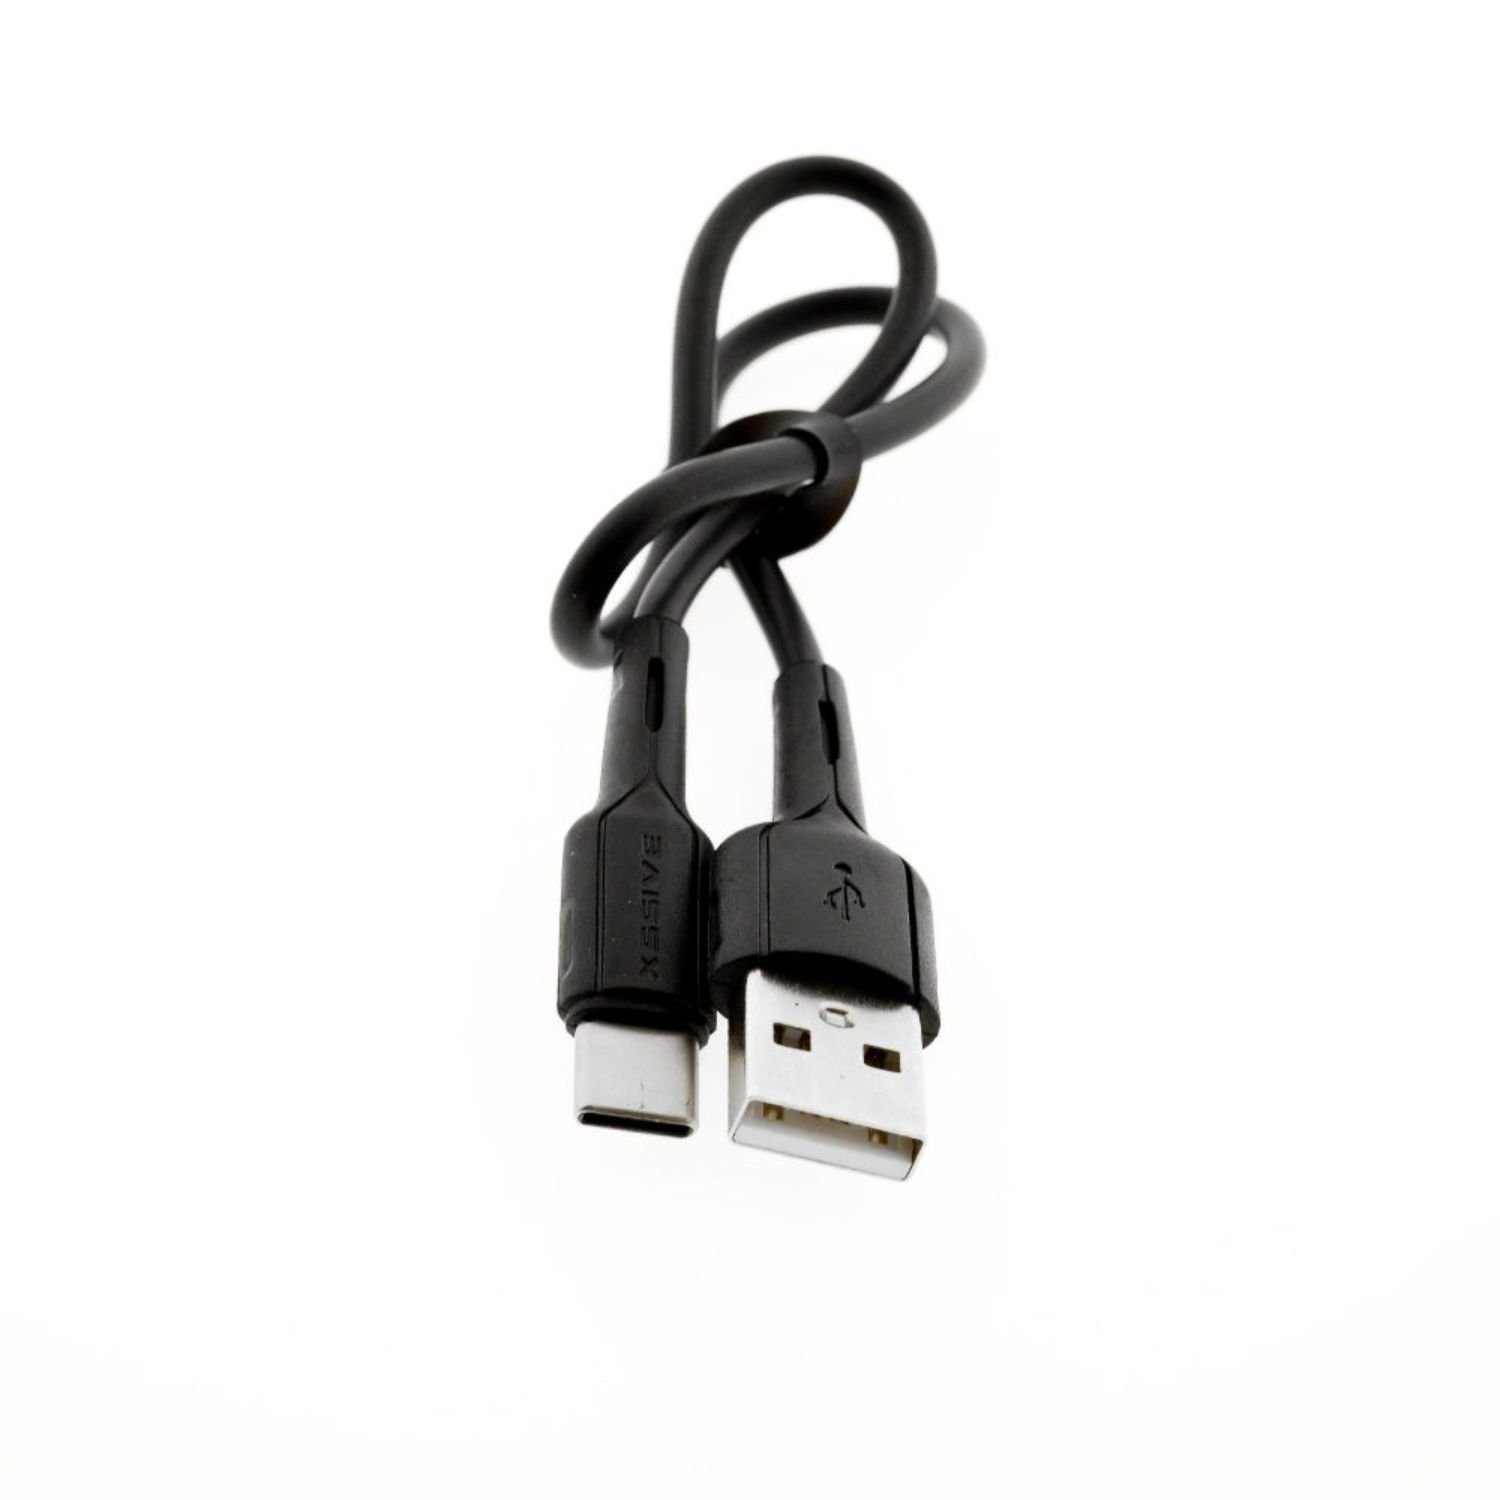 COFI 1453 Lade- und Datenkabel Output Verlängerungskabel 2.4A USB USB-C 30cm zu